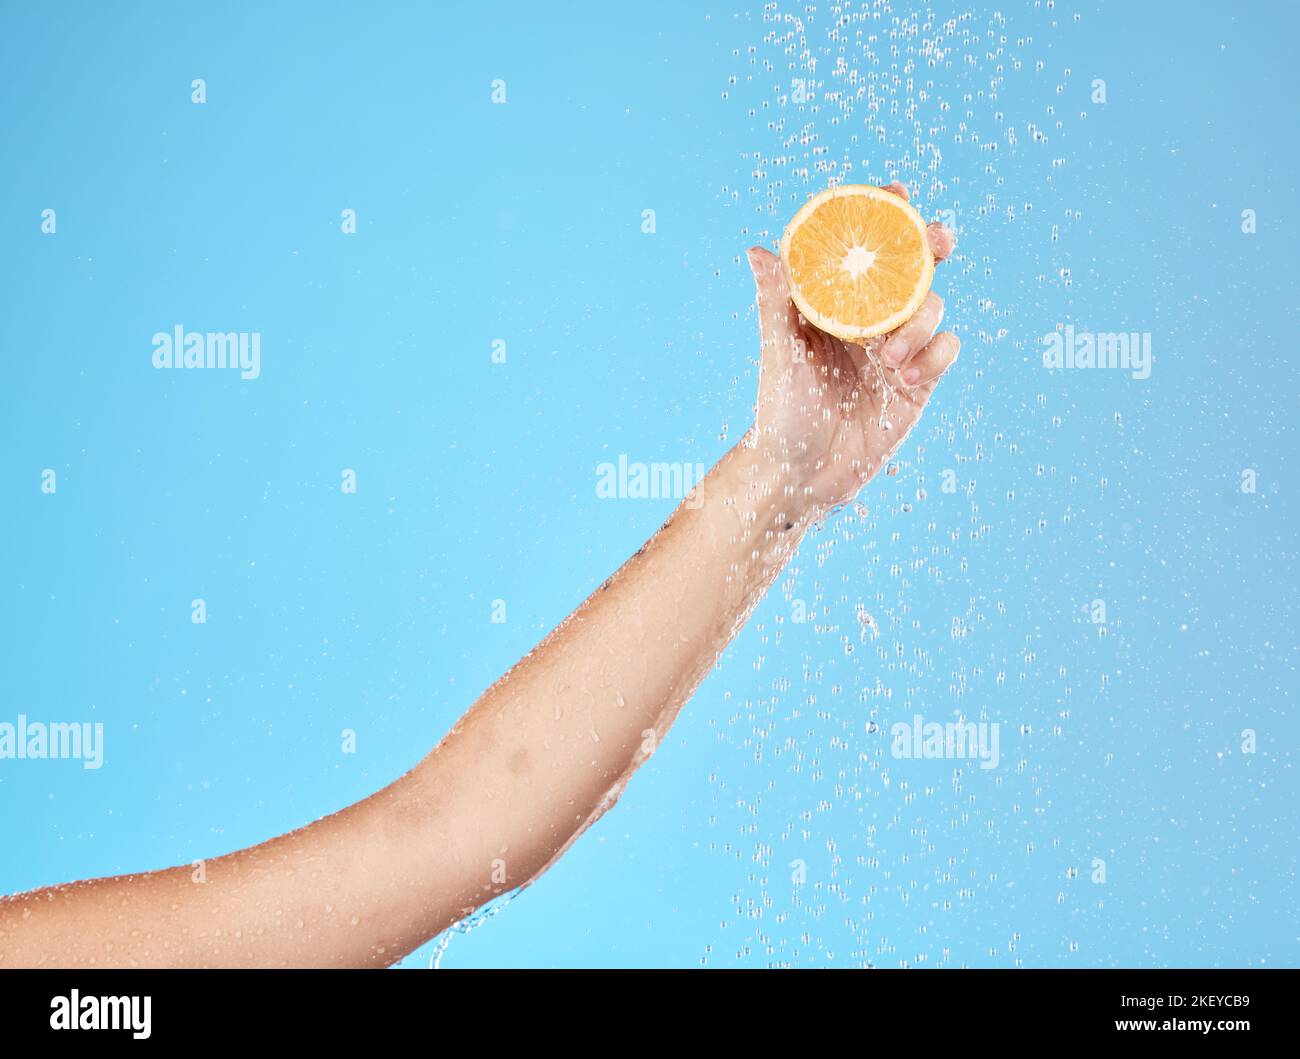 Limón, agua y mano de la mujer con fruta para la salud, la belleza y el bienestar contra mockup fondo azul estudio. Limpieza, nutrición y persona con Foto de stock